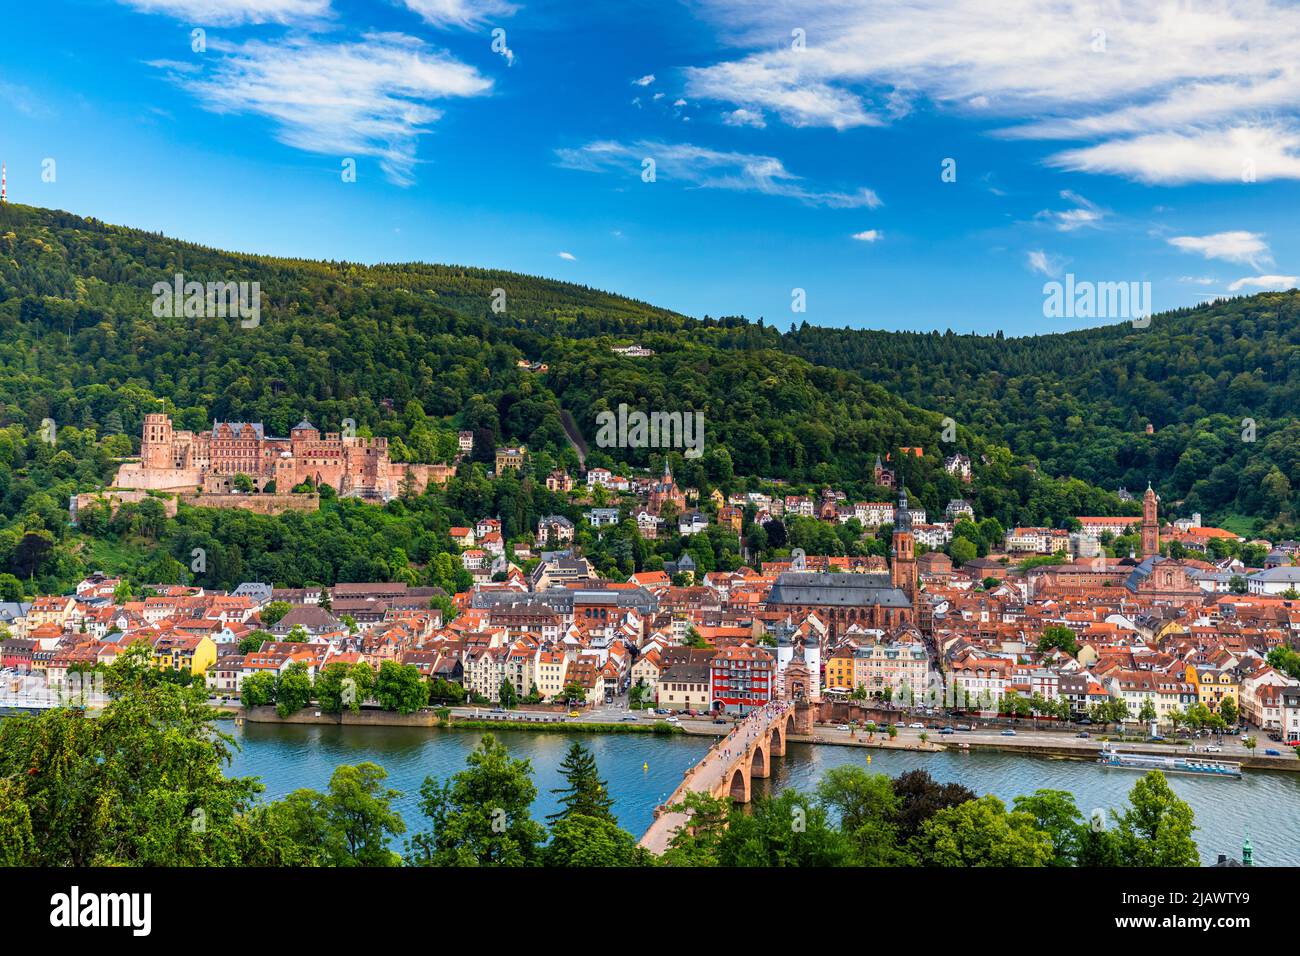 Punto de referencia y hermosa ciudad de Heidelberg con el río Neckar, Alemania. La ciudad de Heidelberg con el famoso puente viejo Karl Theodor y el castillo de Heidelberg, Heid Foto de stock